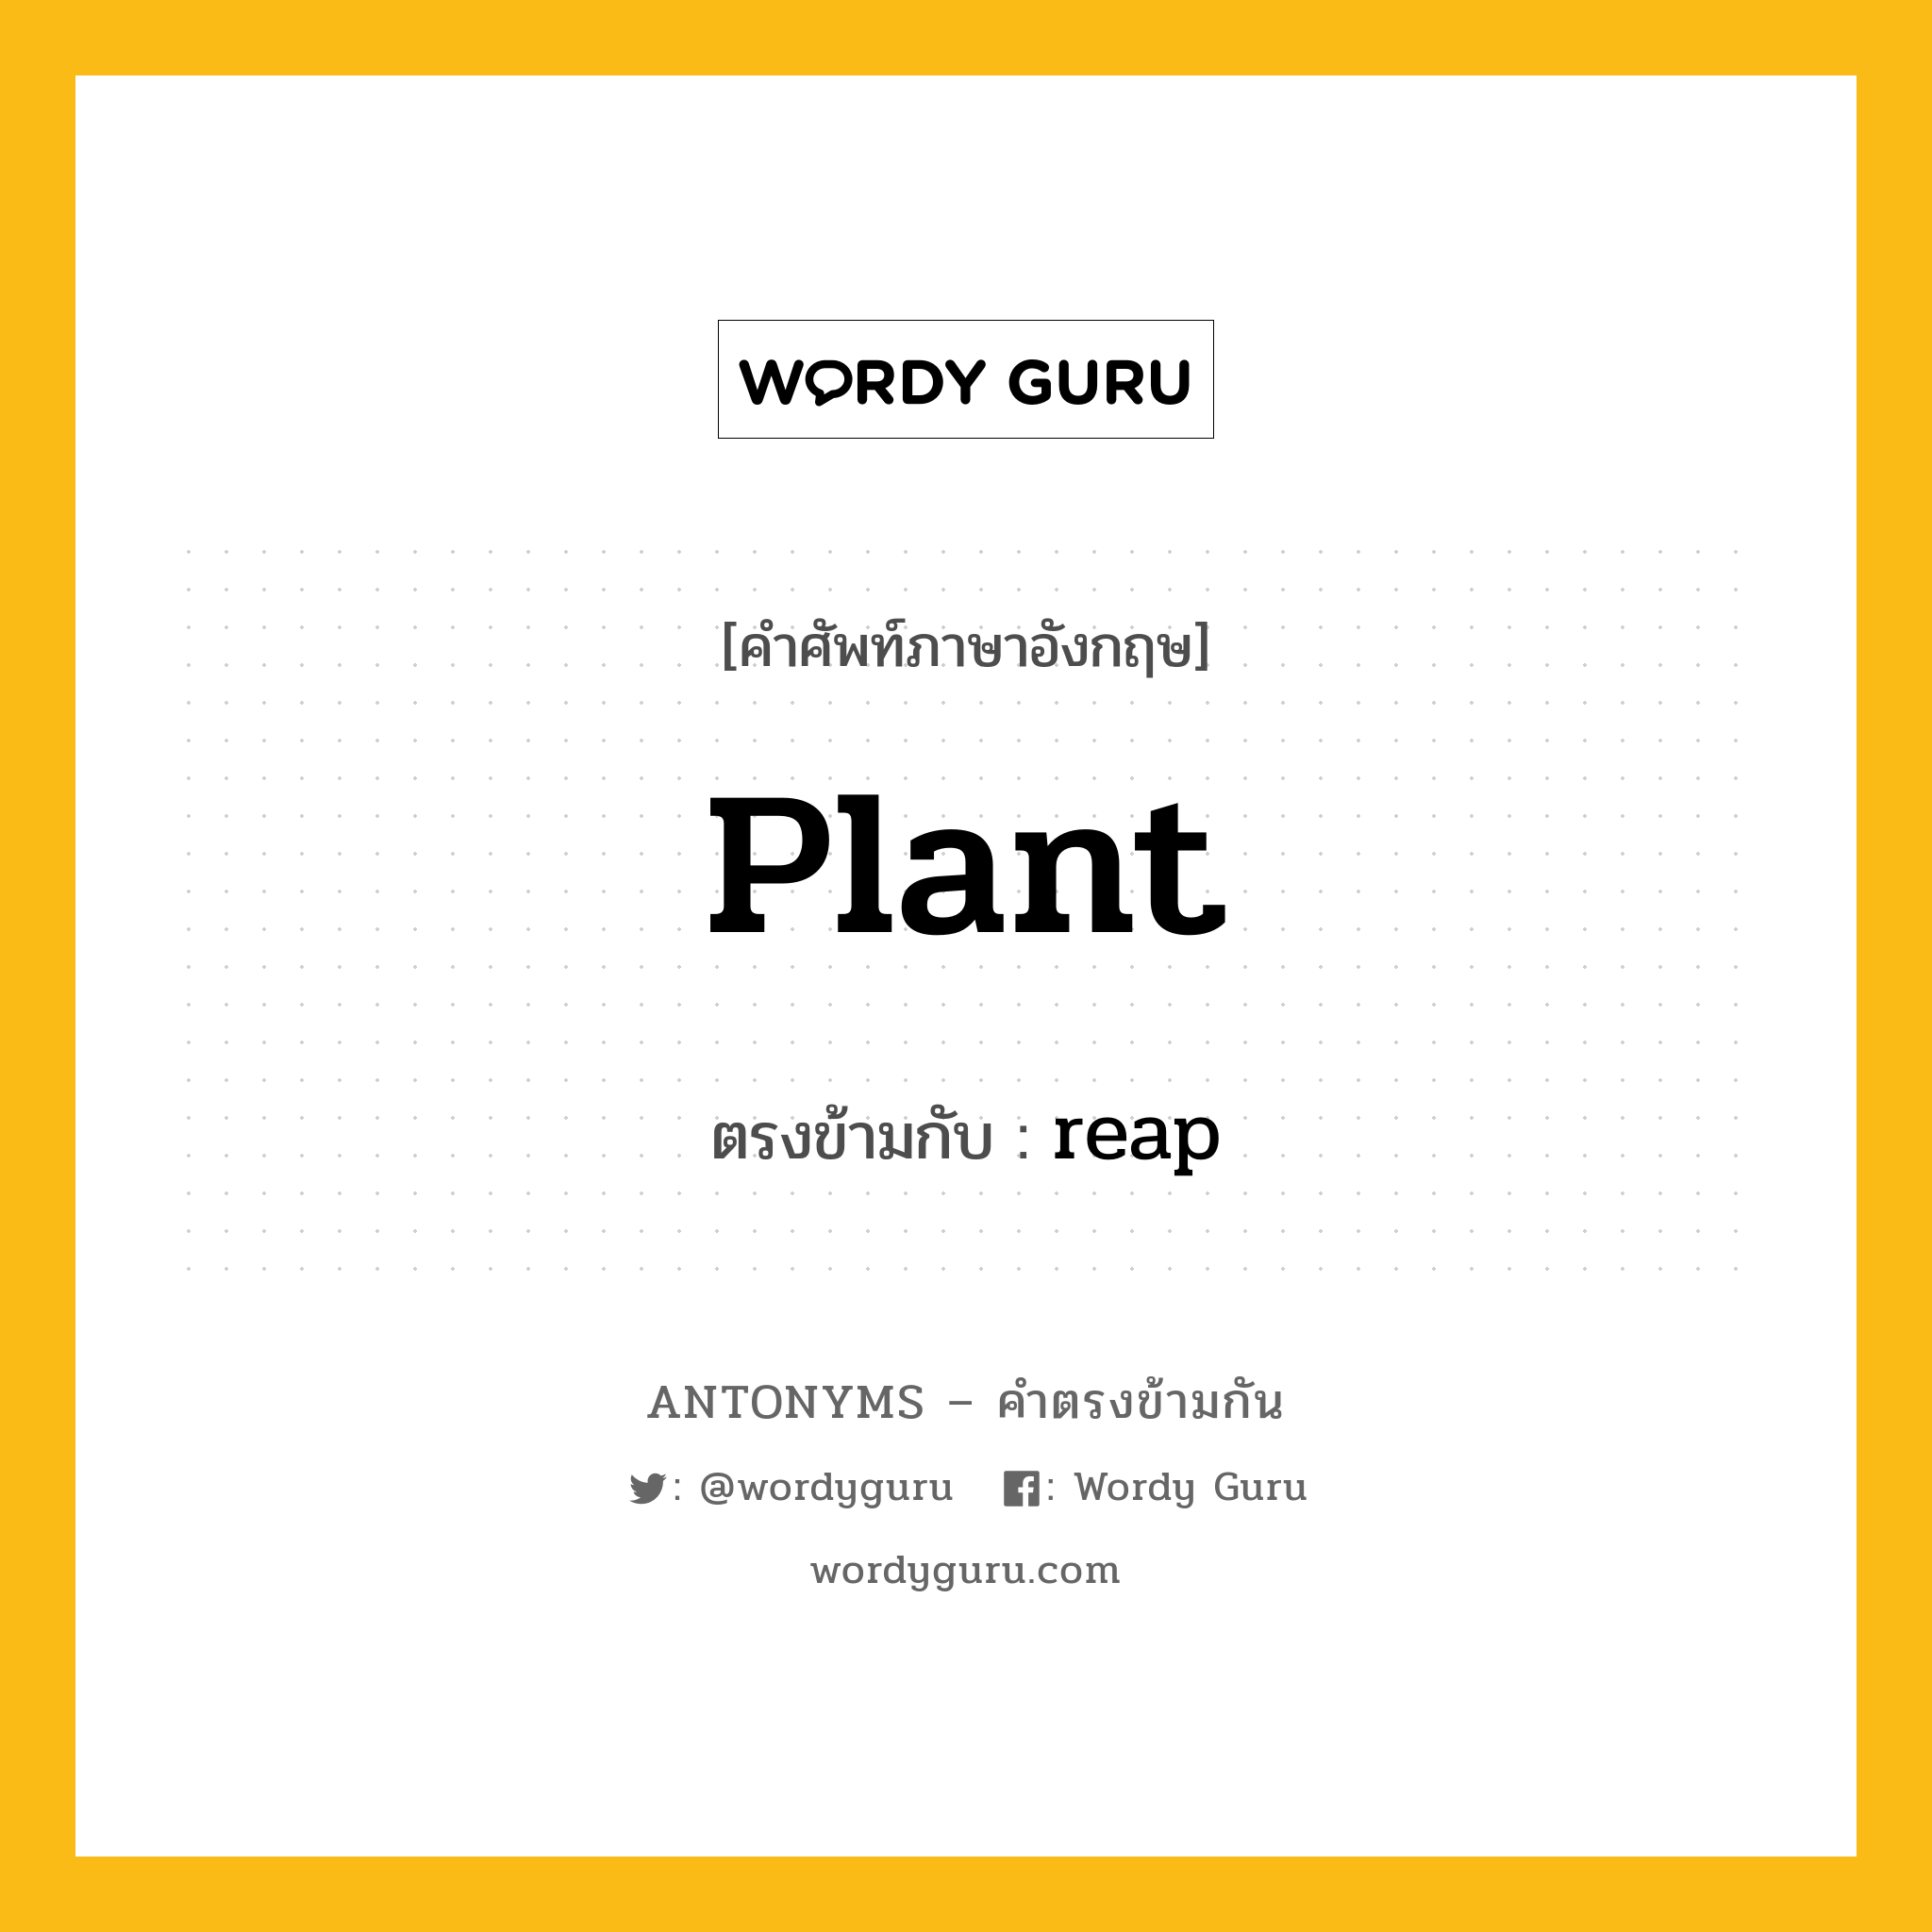 plant เป็นคำตรงข้ามกับคำไหนบ้าง?, คำศัพท์ภาษาอังกฤษ plant ตรงข้ามกับ reap หมวด reap